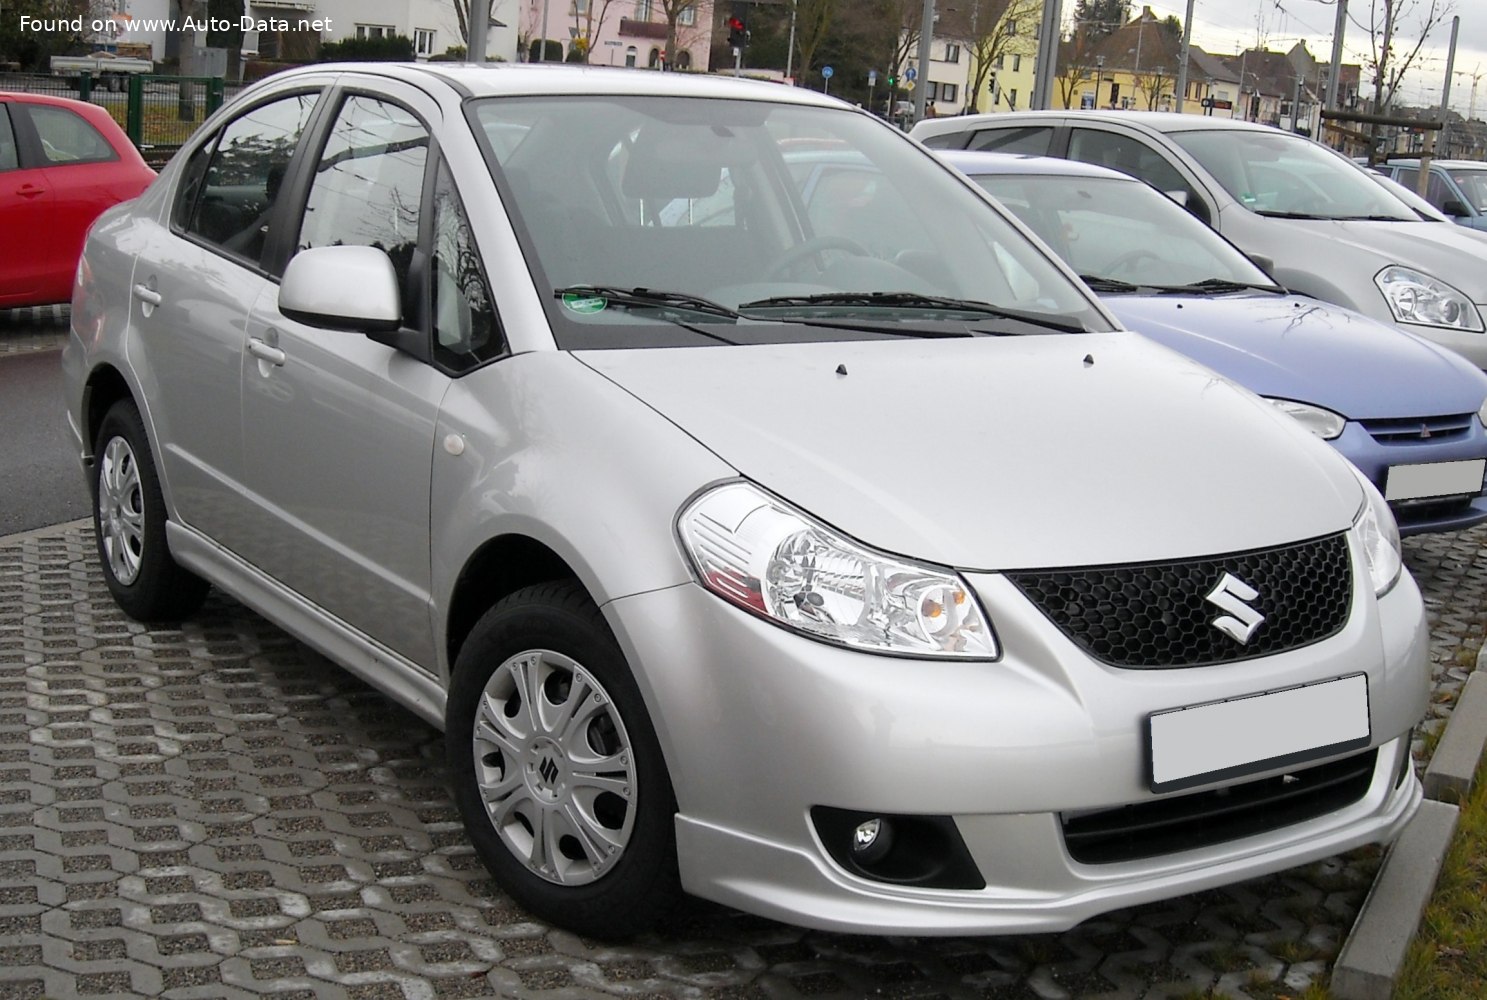 2007 Suzuki SX4 Sedan Technical Specs, Fuel consumption